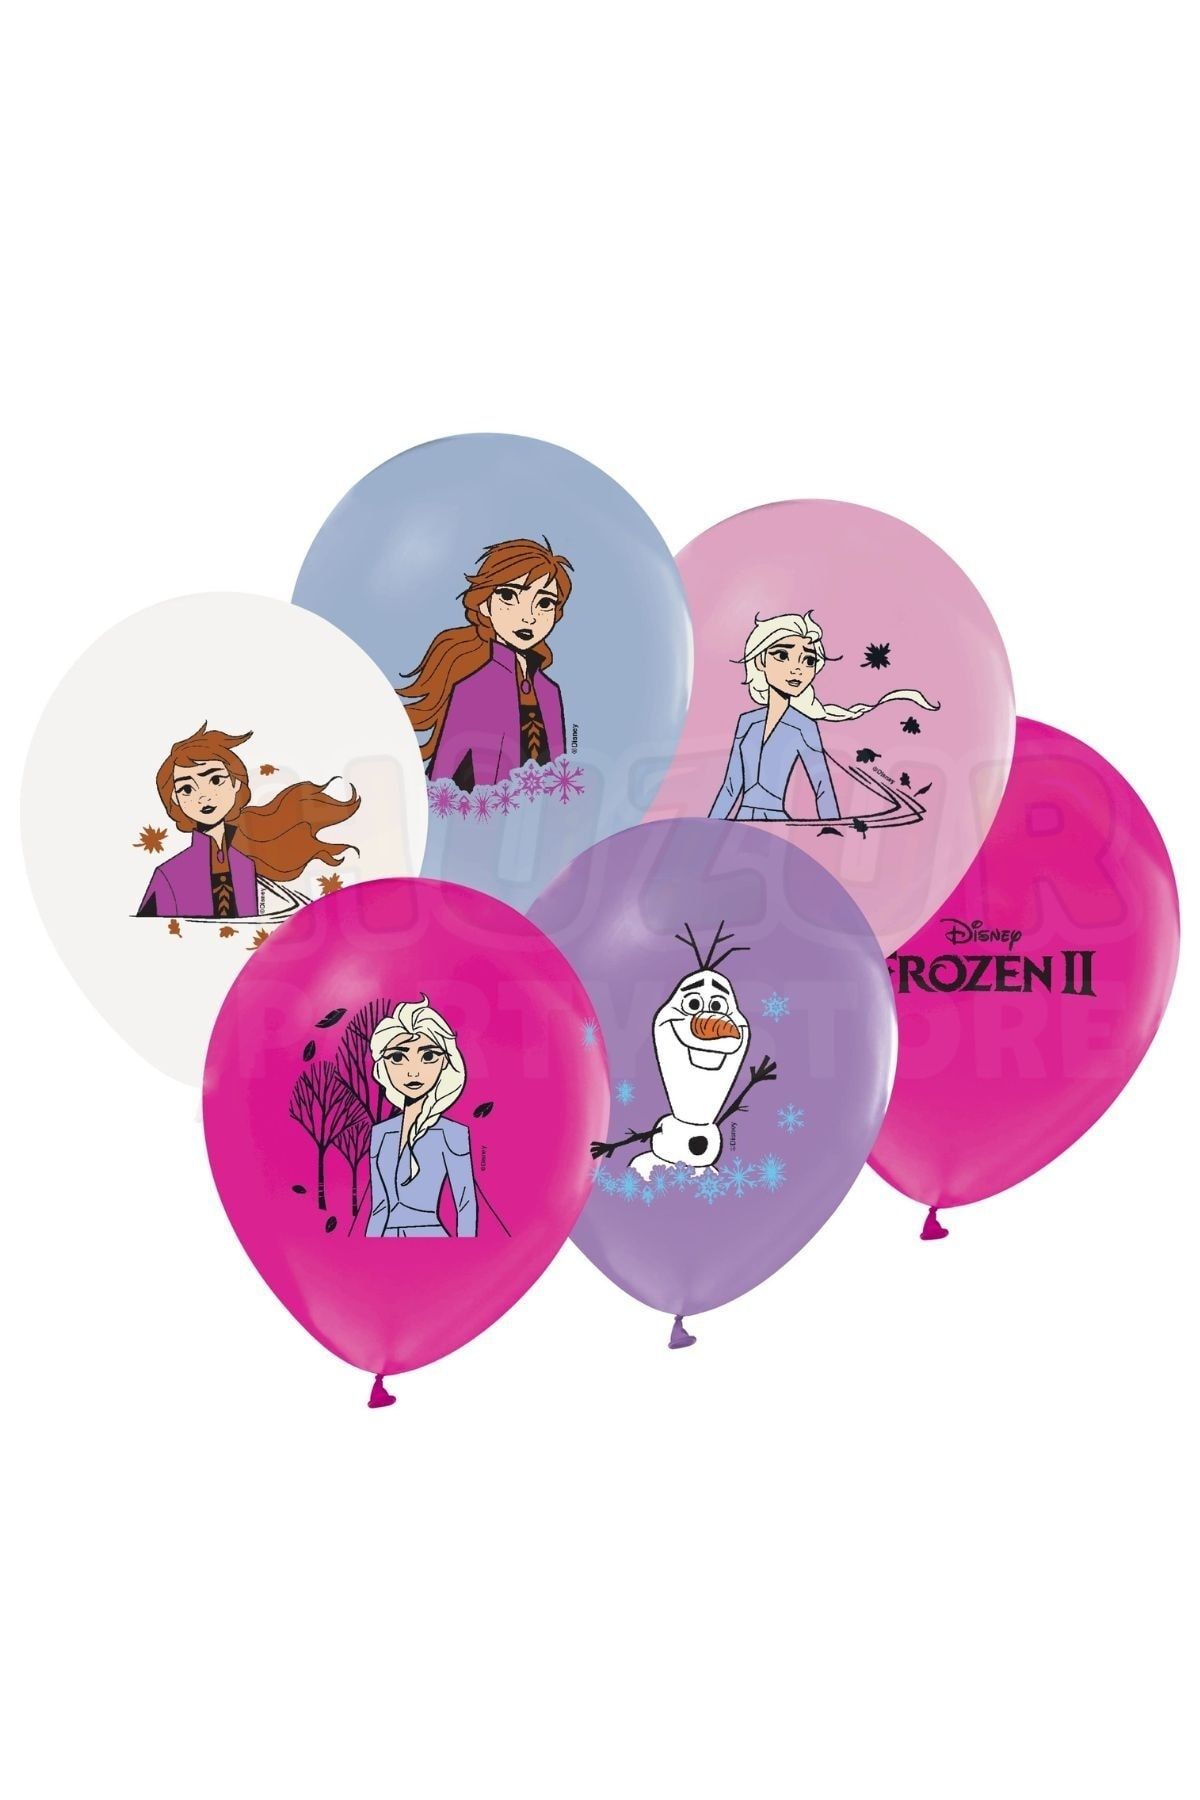 Huzur Party Store Elsa Anna Frozen Baskılı Balon 10 Adet 30 Cm Karakterli Doğum Günü Karlar Ülkesi Temalı Konsepti